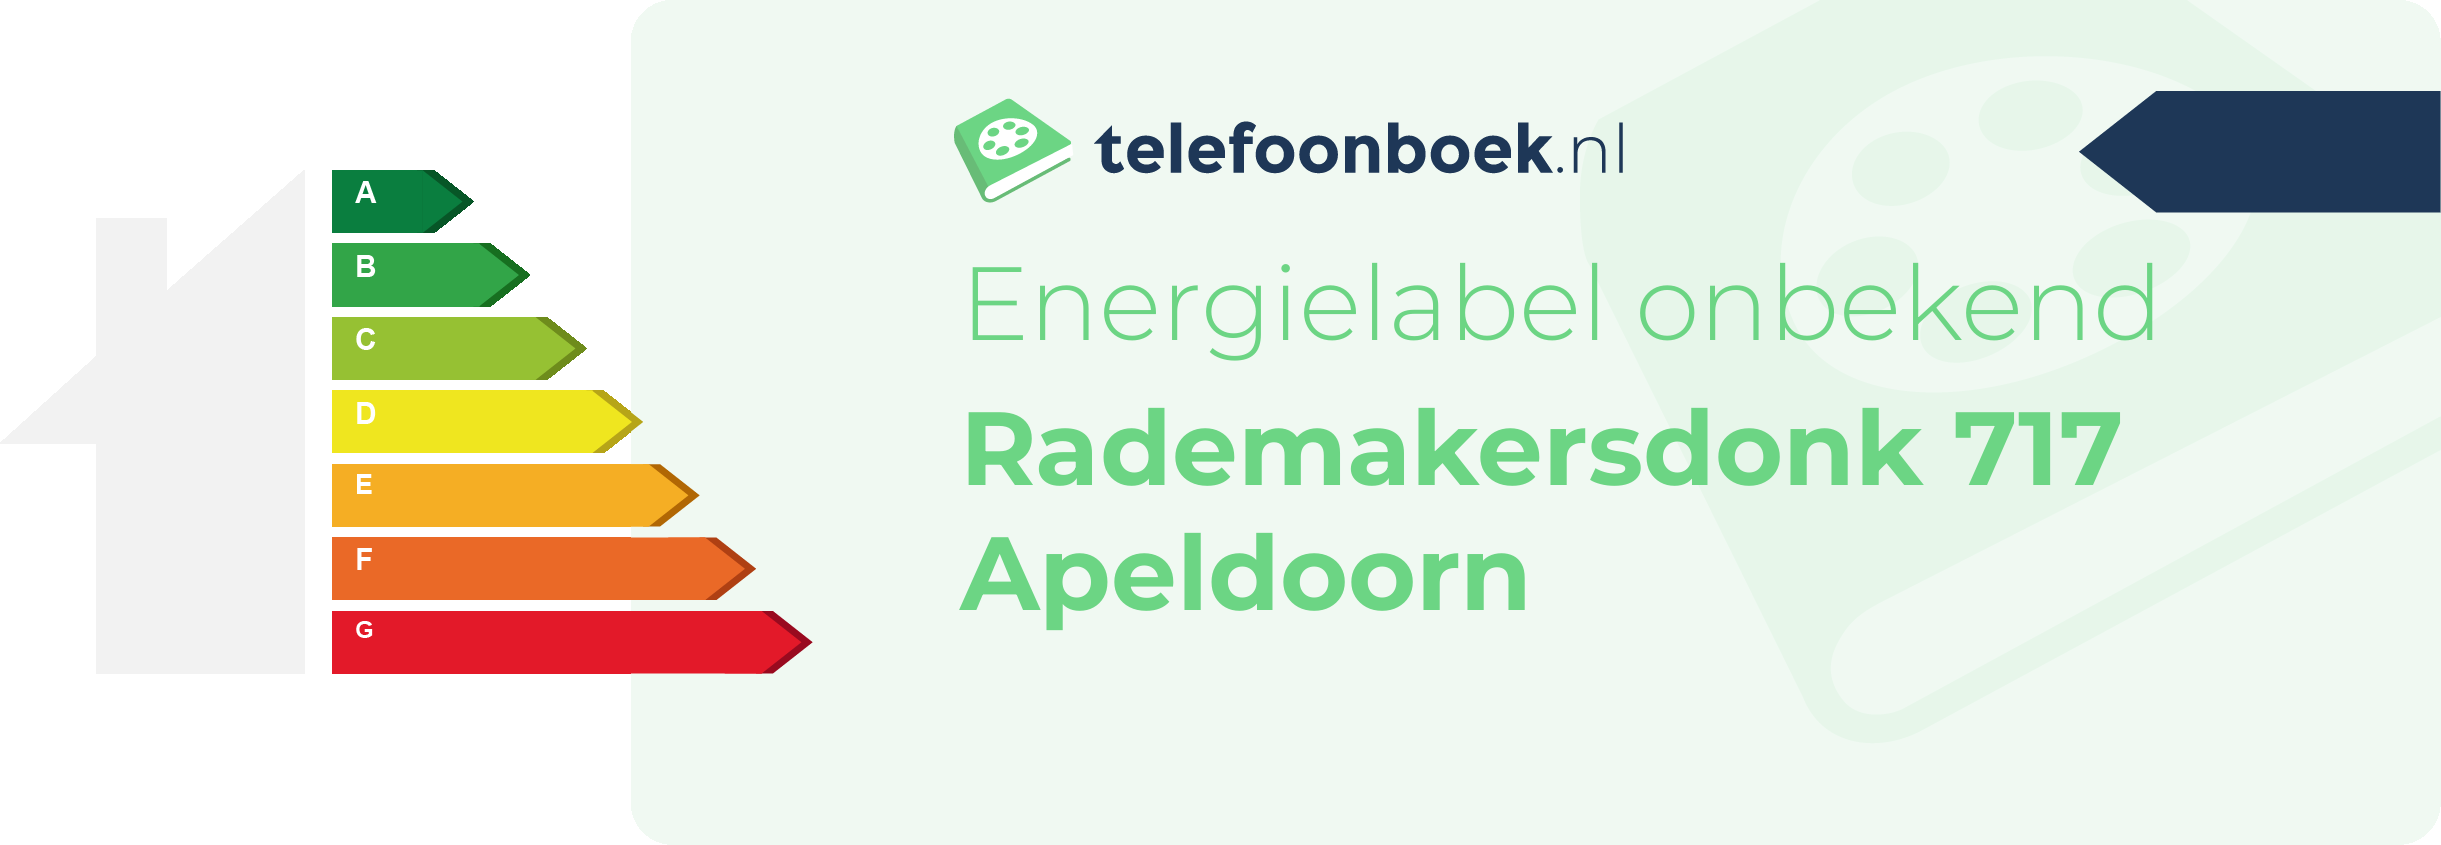 Energielabel Rademakersdonk 717 Apeldoorn